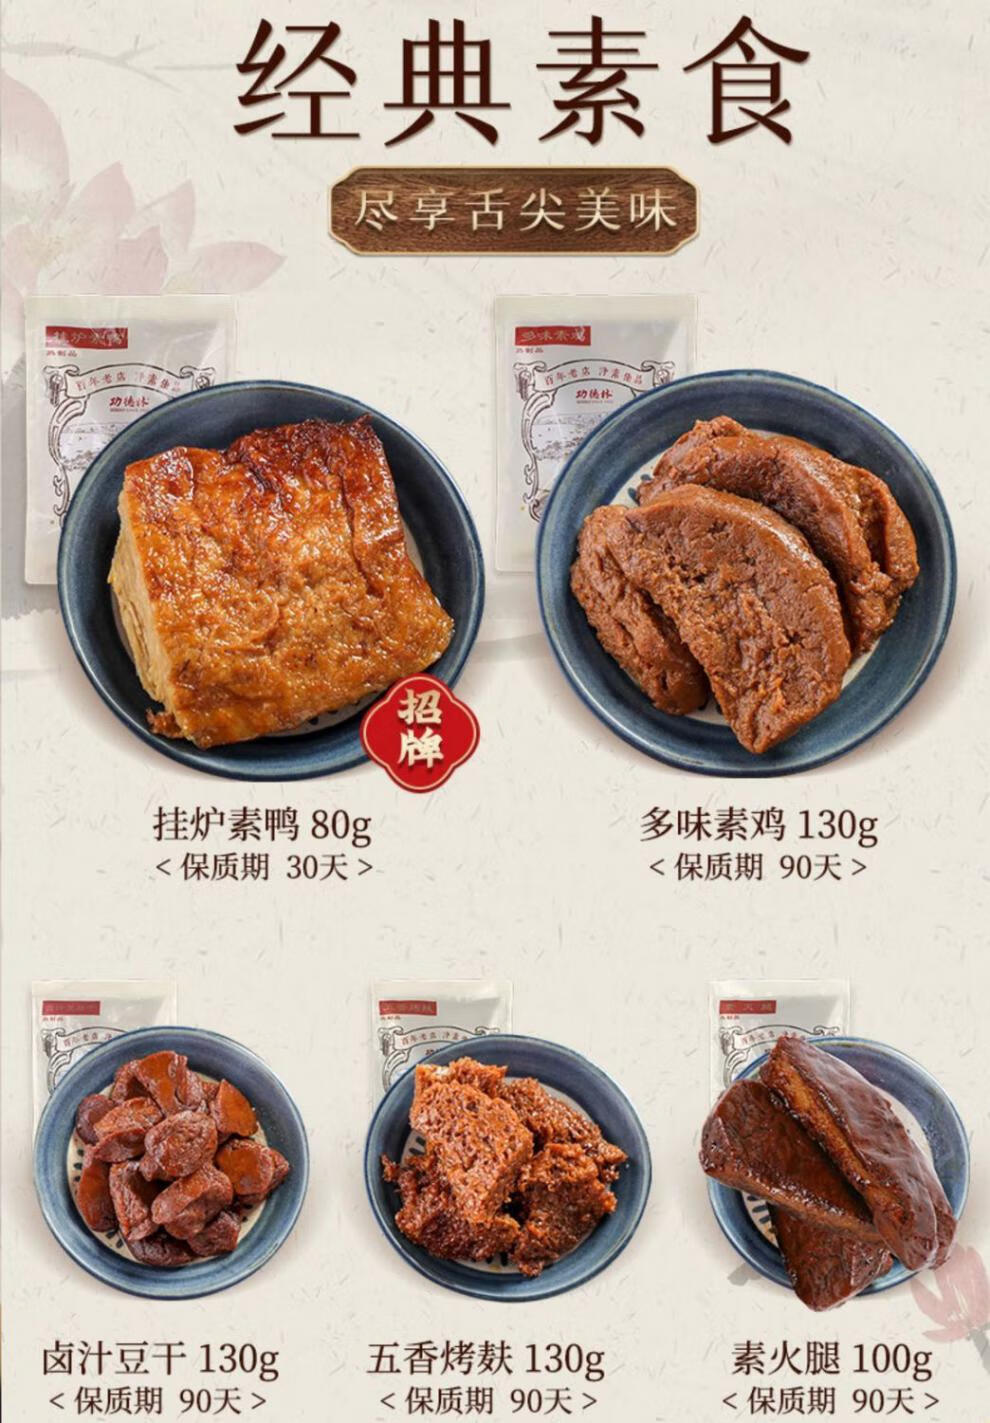 上海功德林素食五香烤麸挂炉素鸭素鸡零食上海功德林素食五香烤麸豆干